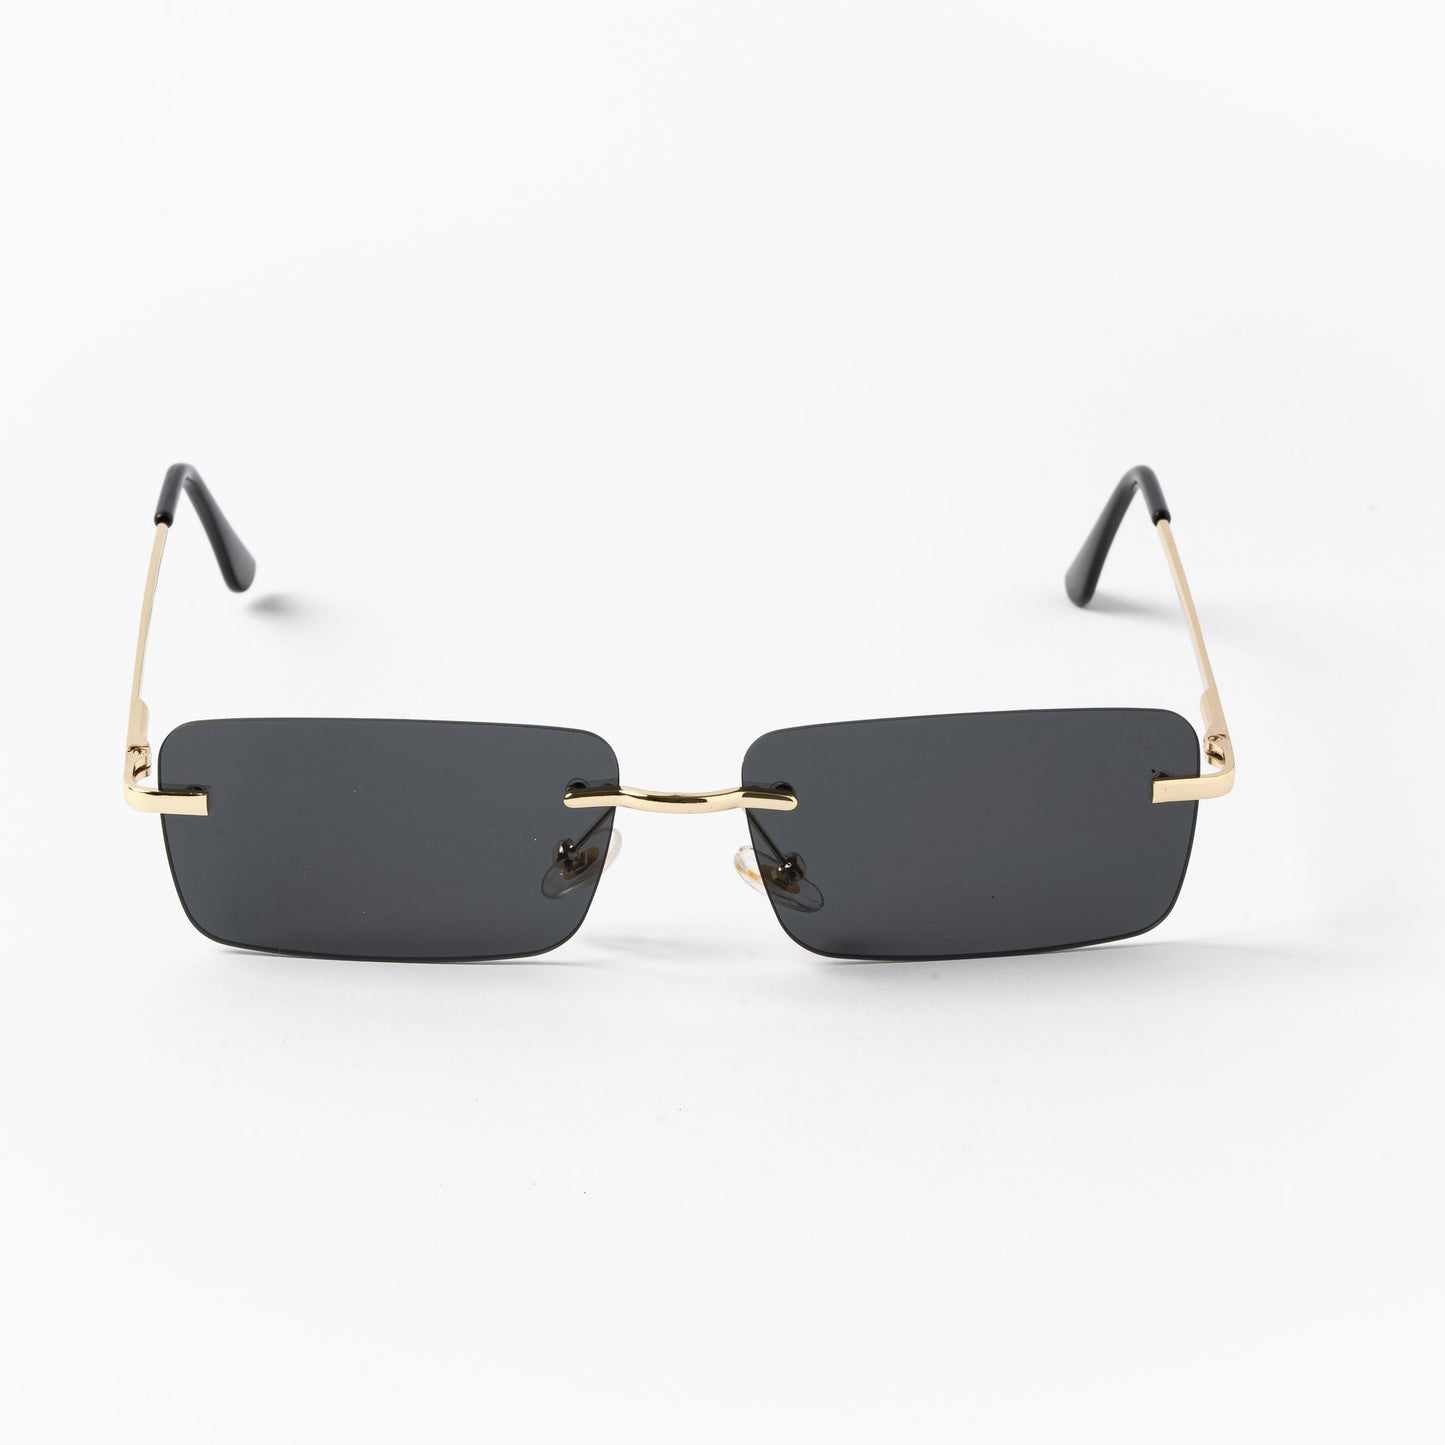 Ορθογώνια Γυαλιά Ηλίου Tez της Exposure Sunglasses με προστασία UV400 σε χρυσό χρώμα σκελετού και μαύρο φακό.